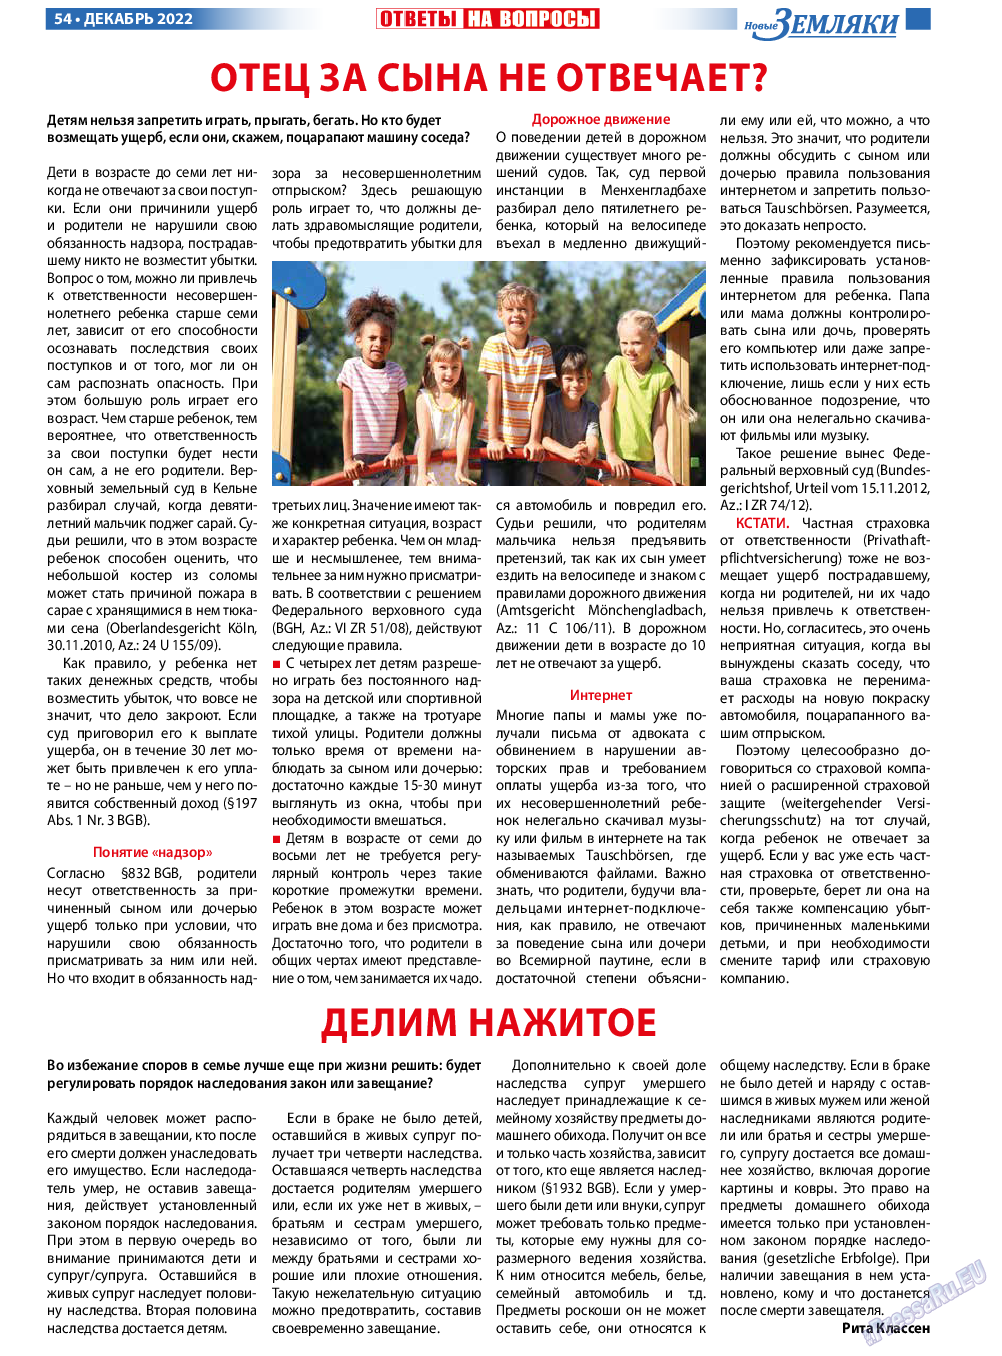 Новые Земляки, газета. 2022 №12 стр.54